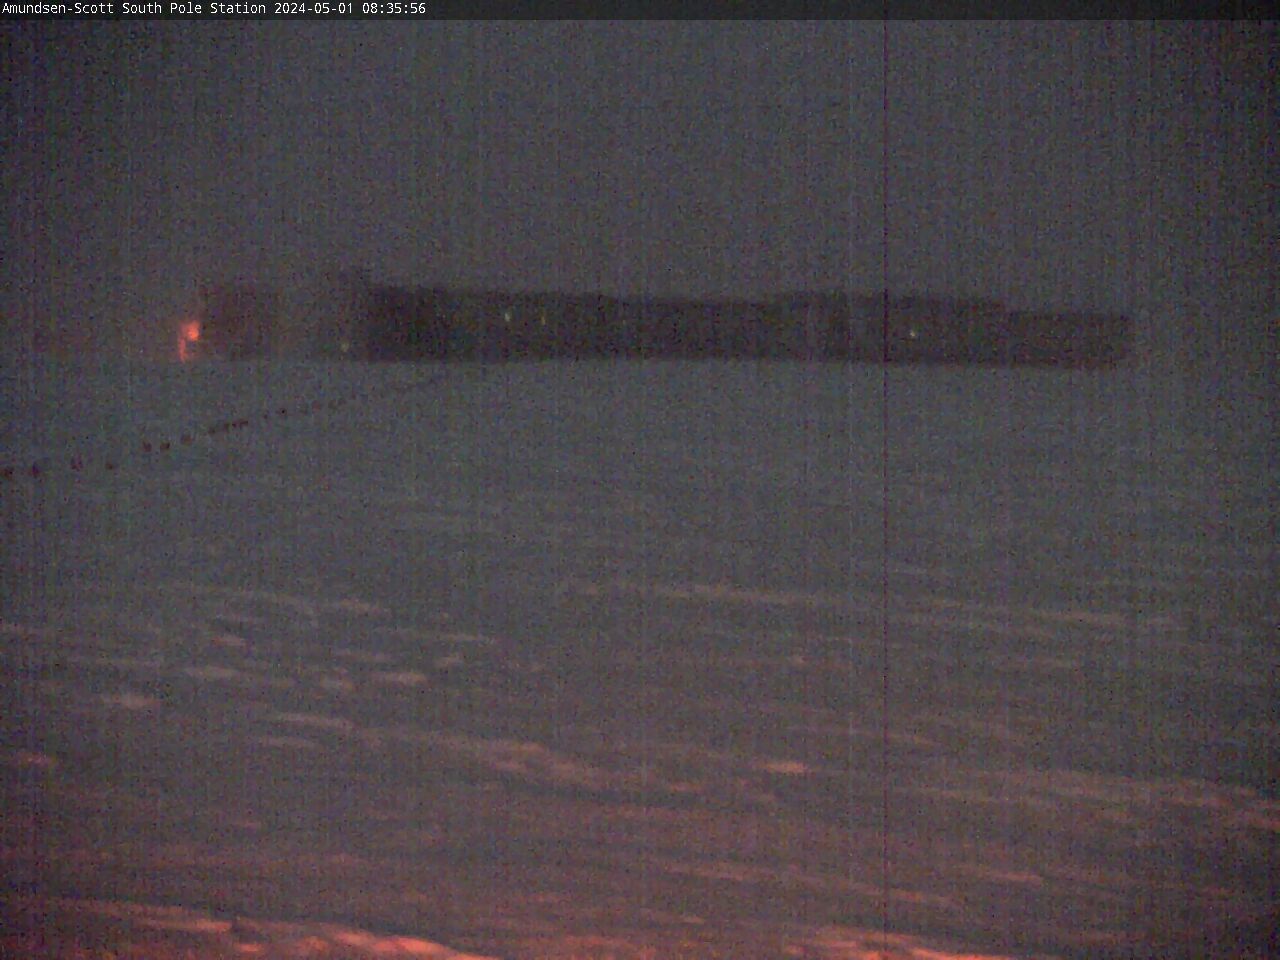 South Pole Station - Amundsen-Scott South Pole Station Webcam